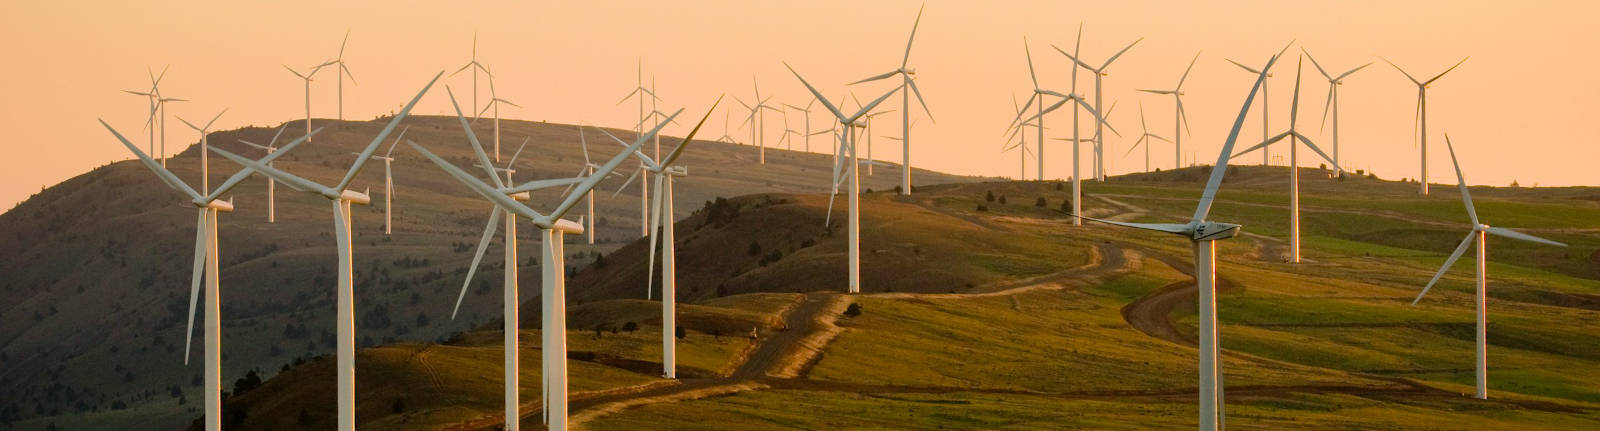 american public power association windfarm unsplash